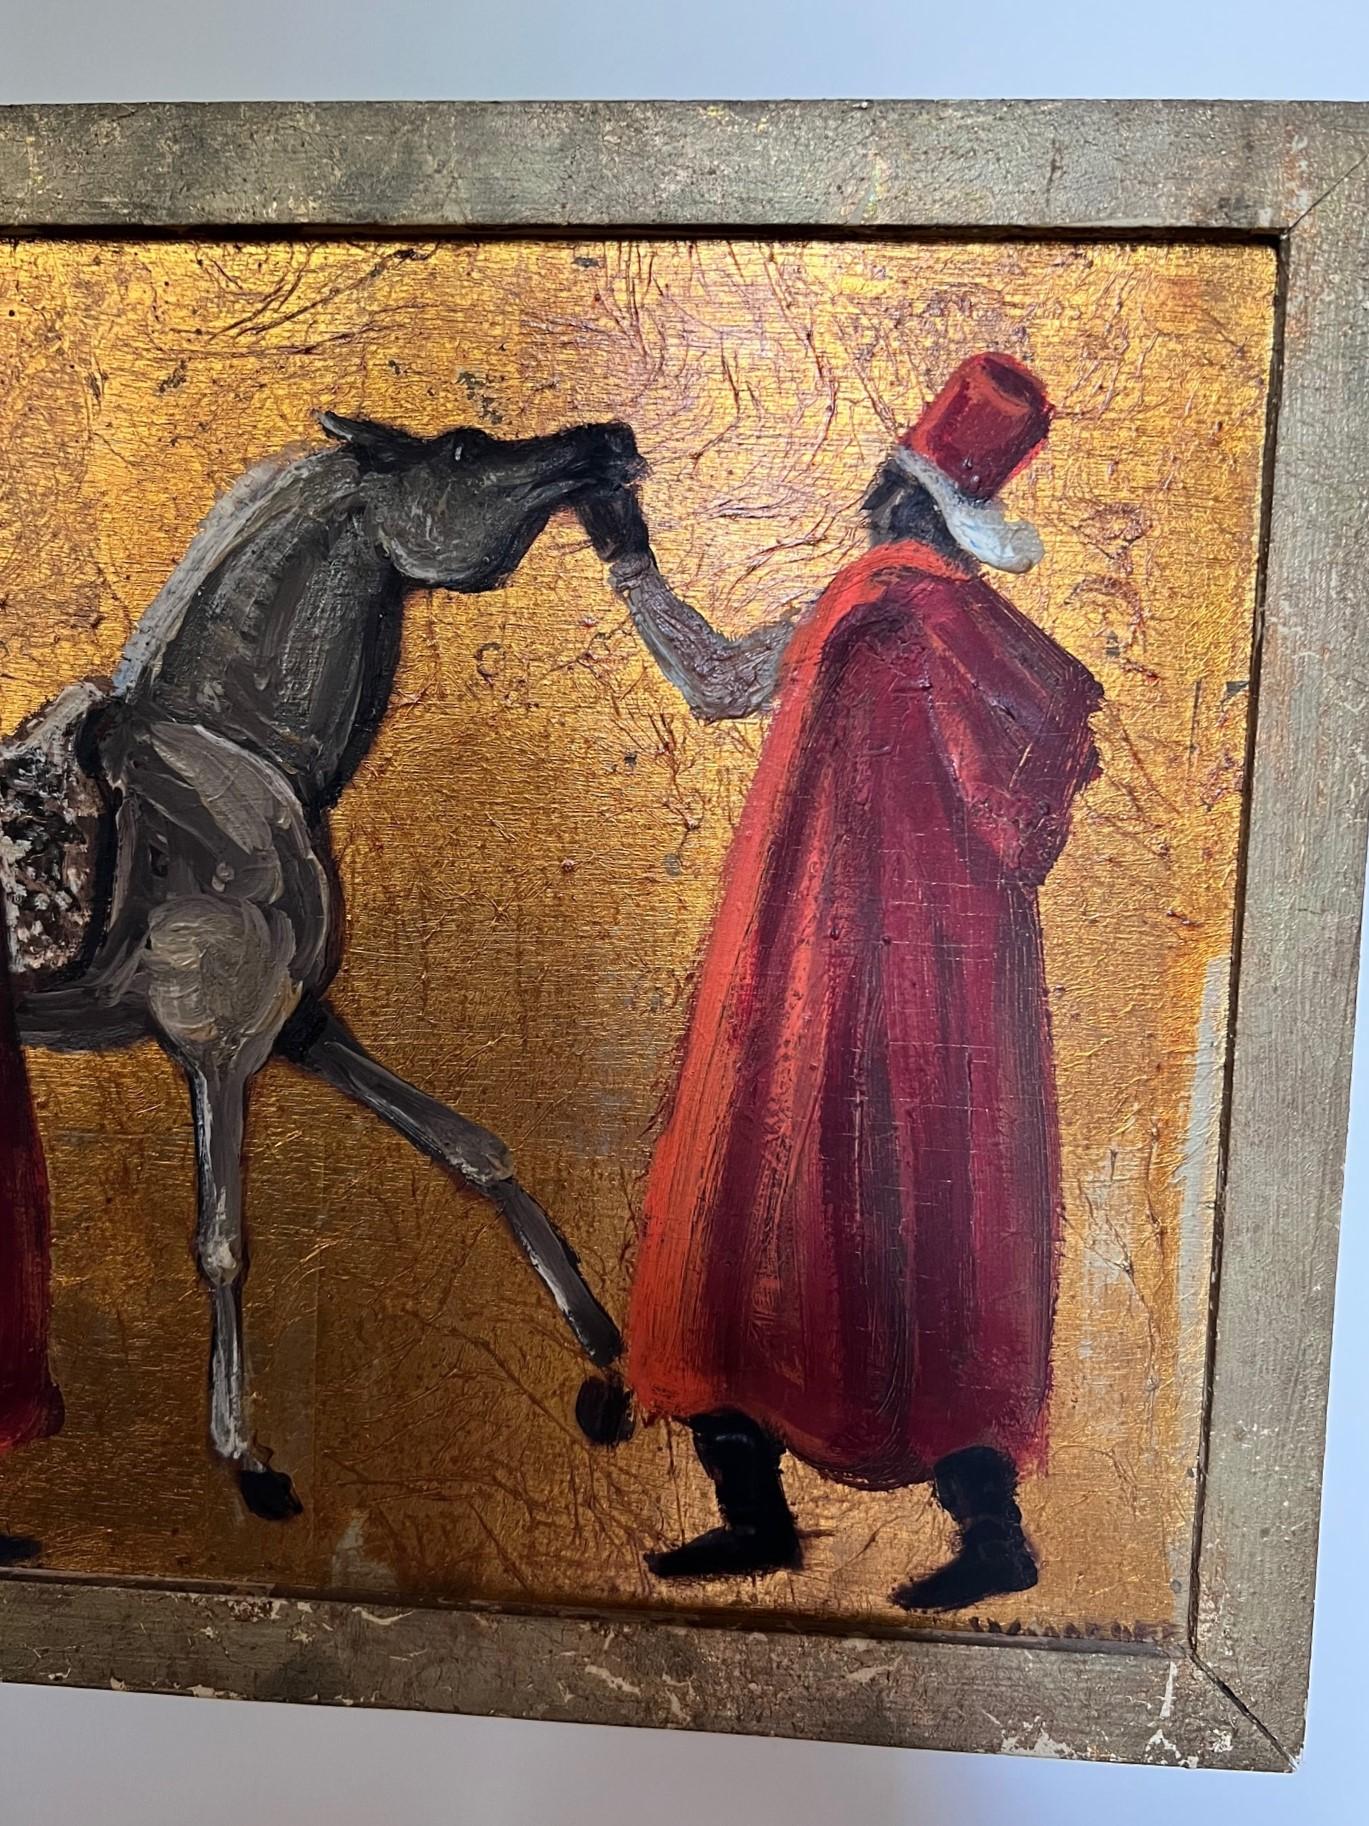 Porter Woodruff (1894-1959), artiste et illustrateur américain de l'intra-guerre. Scène de cheval arabe, huile et feuille d'or sur panneau avec gouache crayeuse. Signé Woodruff en bas à droite de la peinture. Signature quelque peu masquée par le